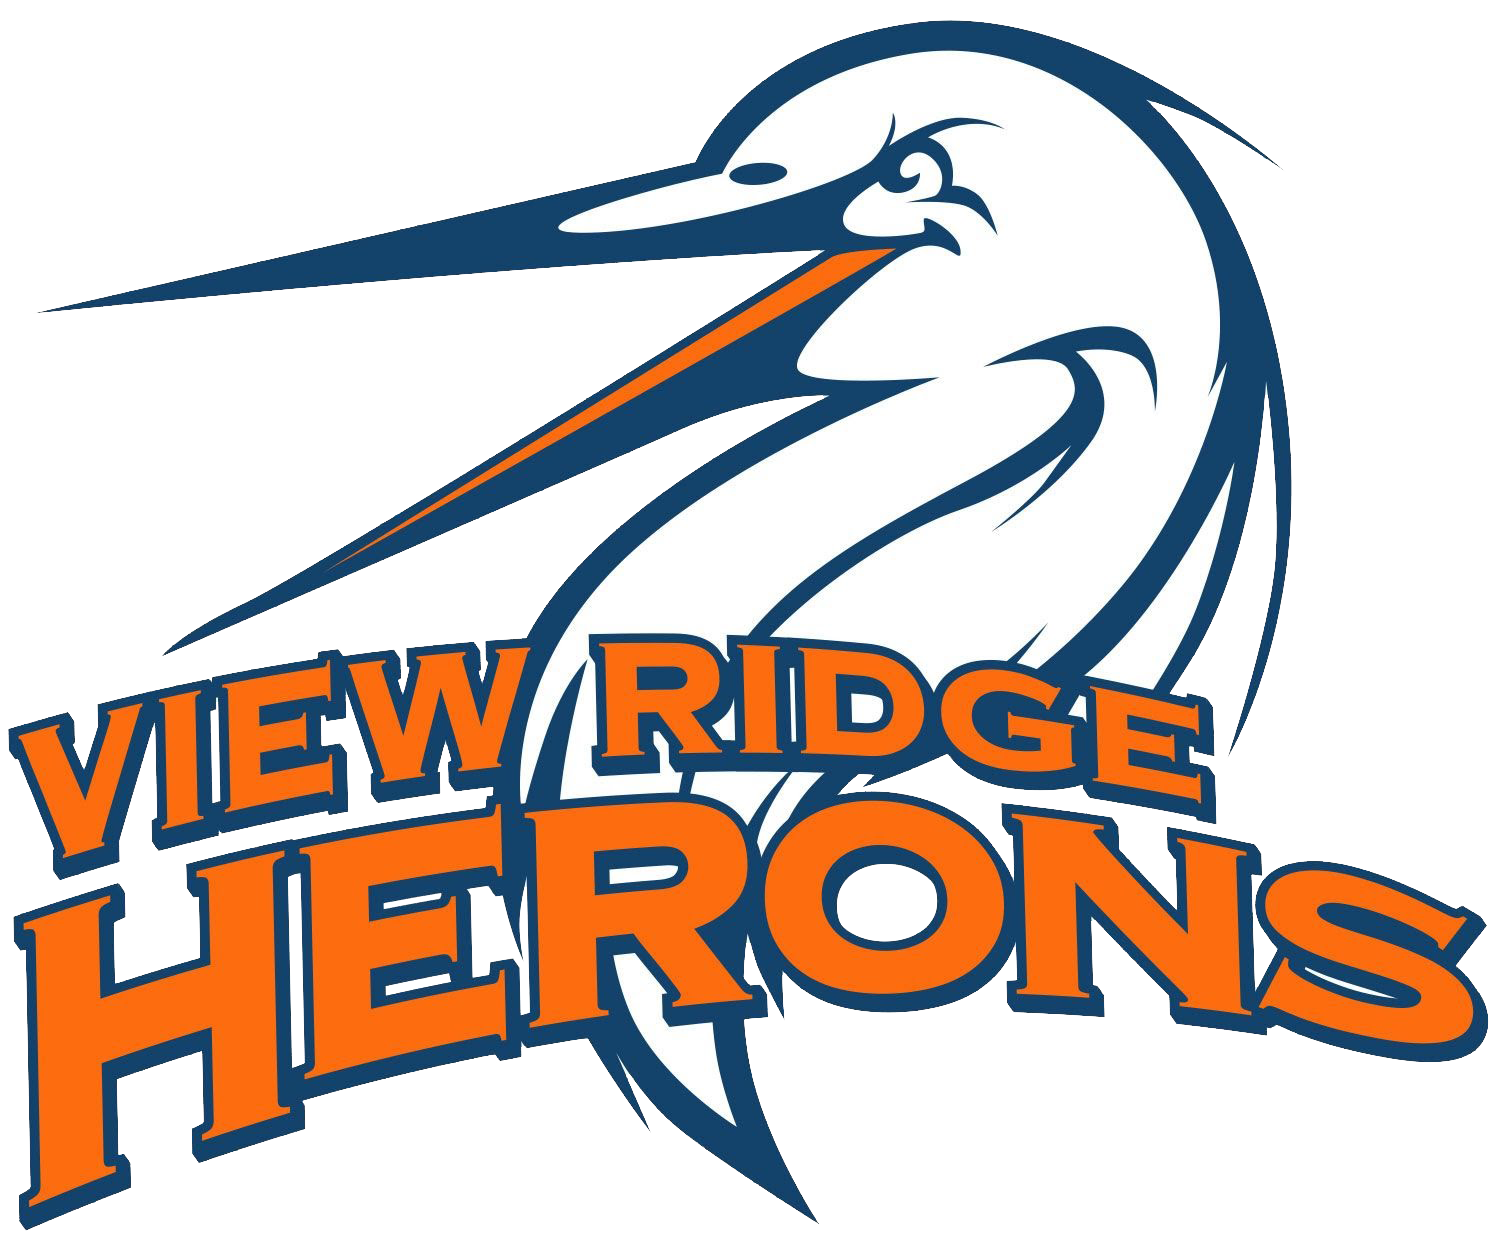 view ridge herons